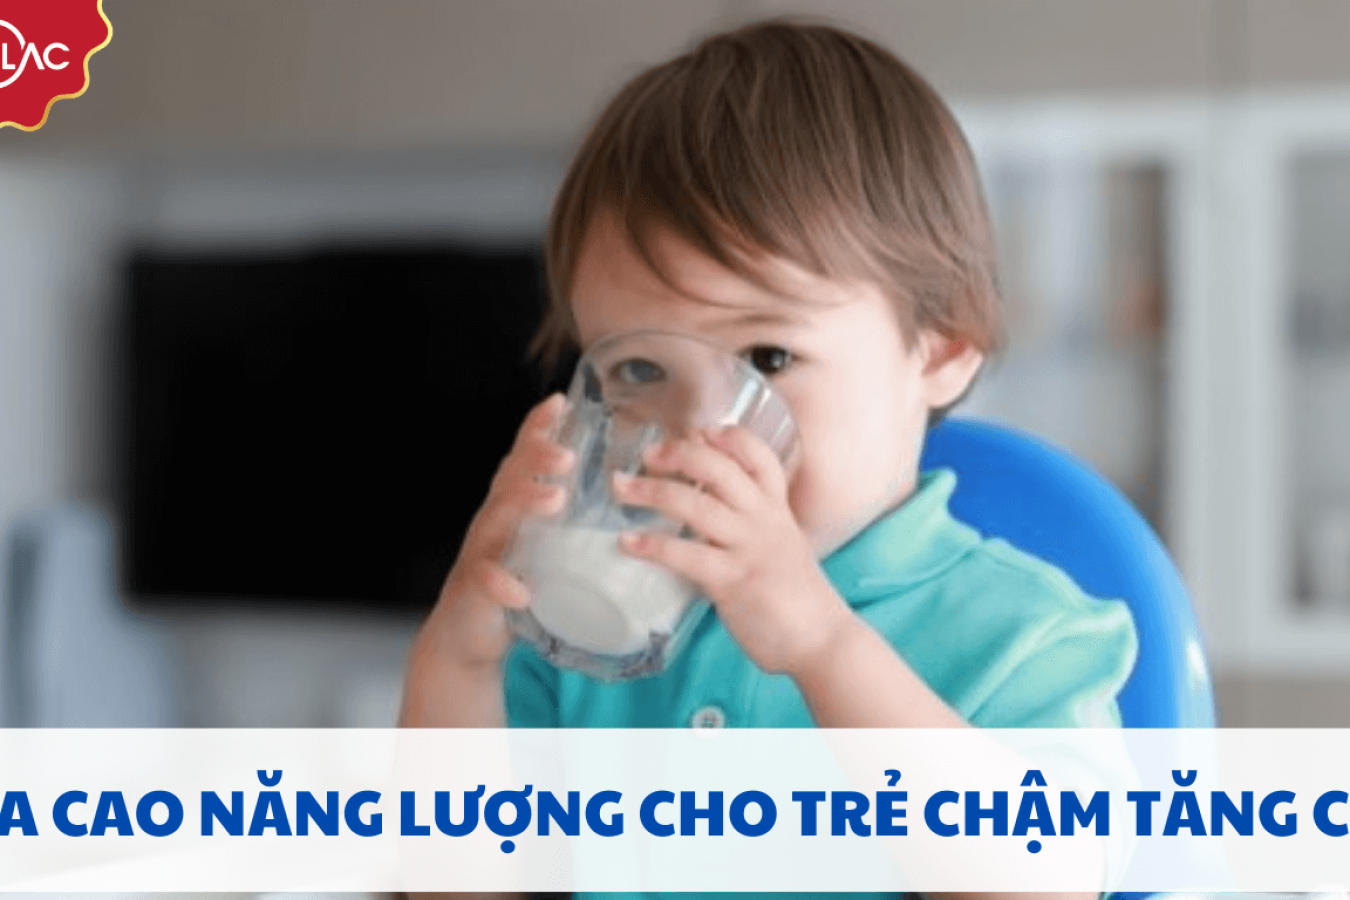 TOP 7 dòng sữa cao năng lượng cho trẻ chậm tăng cân tốt 2023